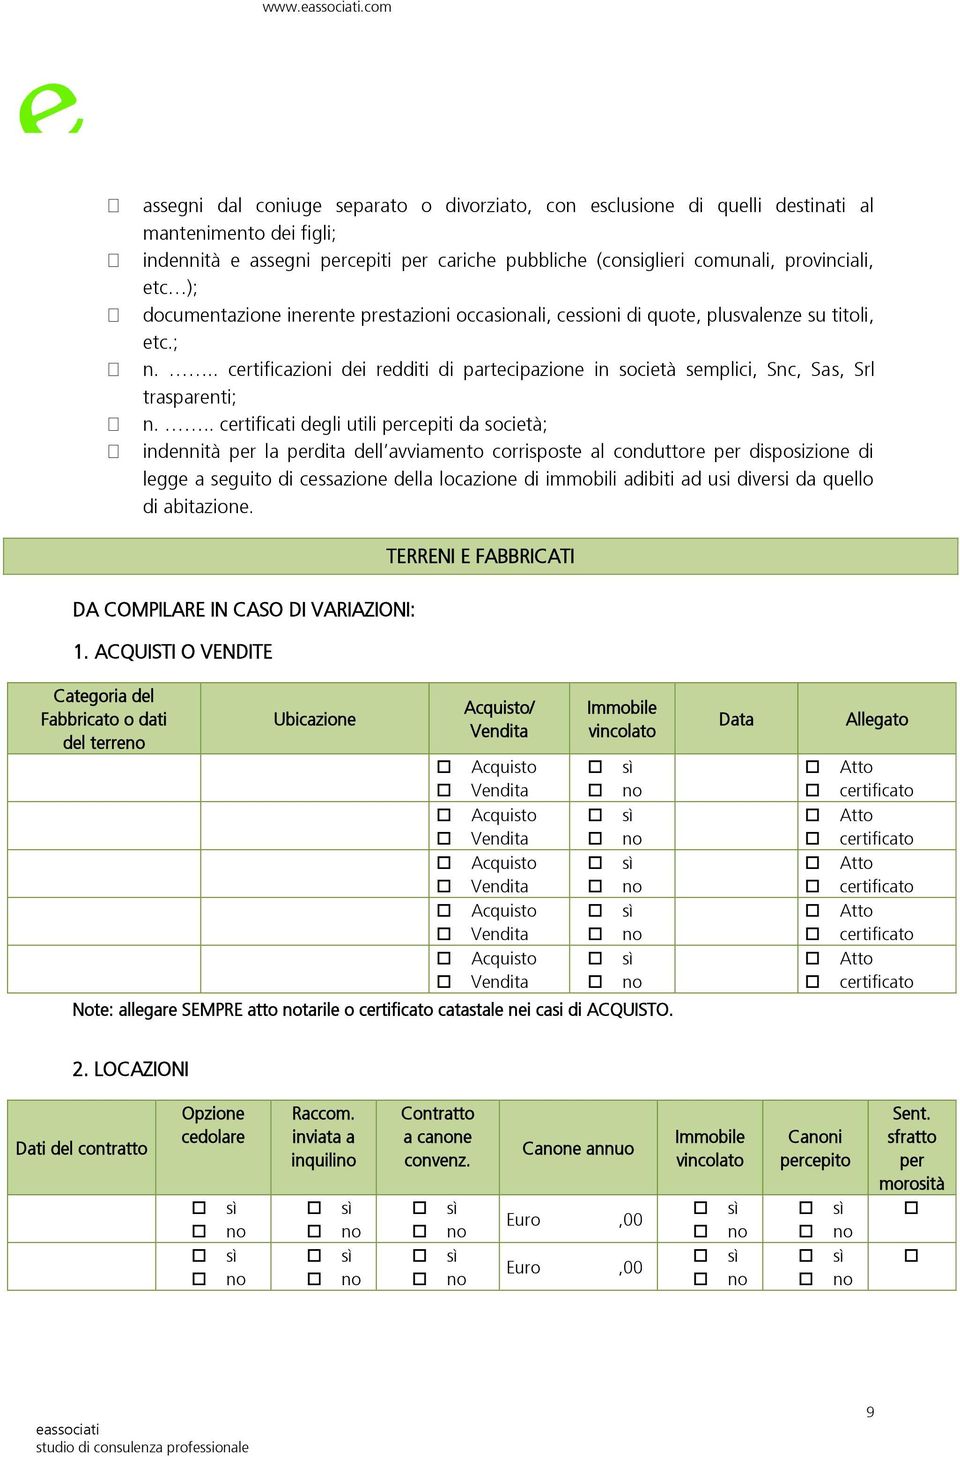 .. certificazioni dei redditi di partecipazione in società semplici, Snc, Sas, Srl trasparenti; n.